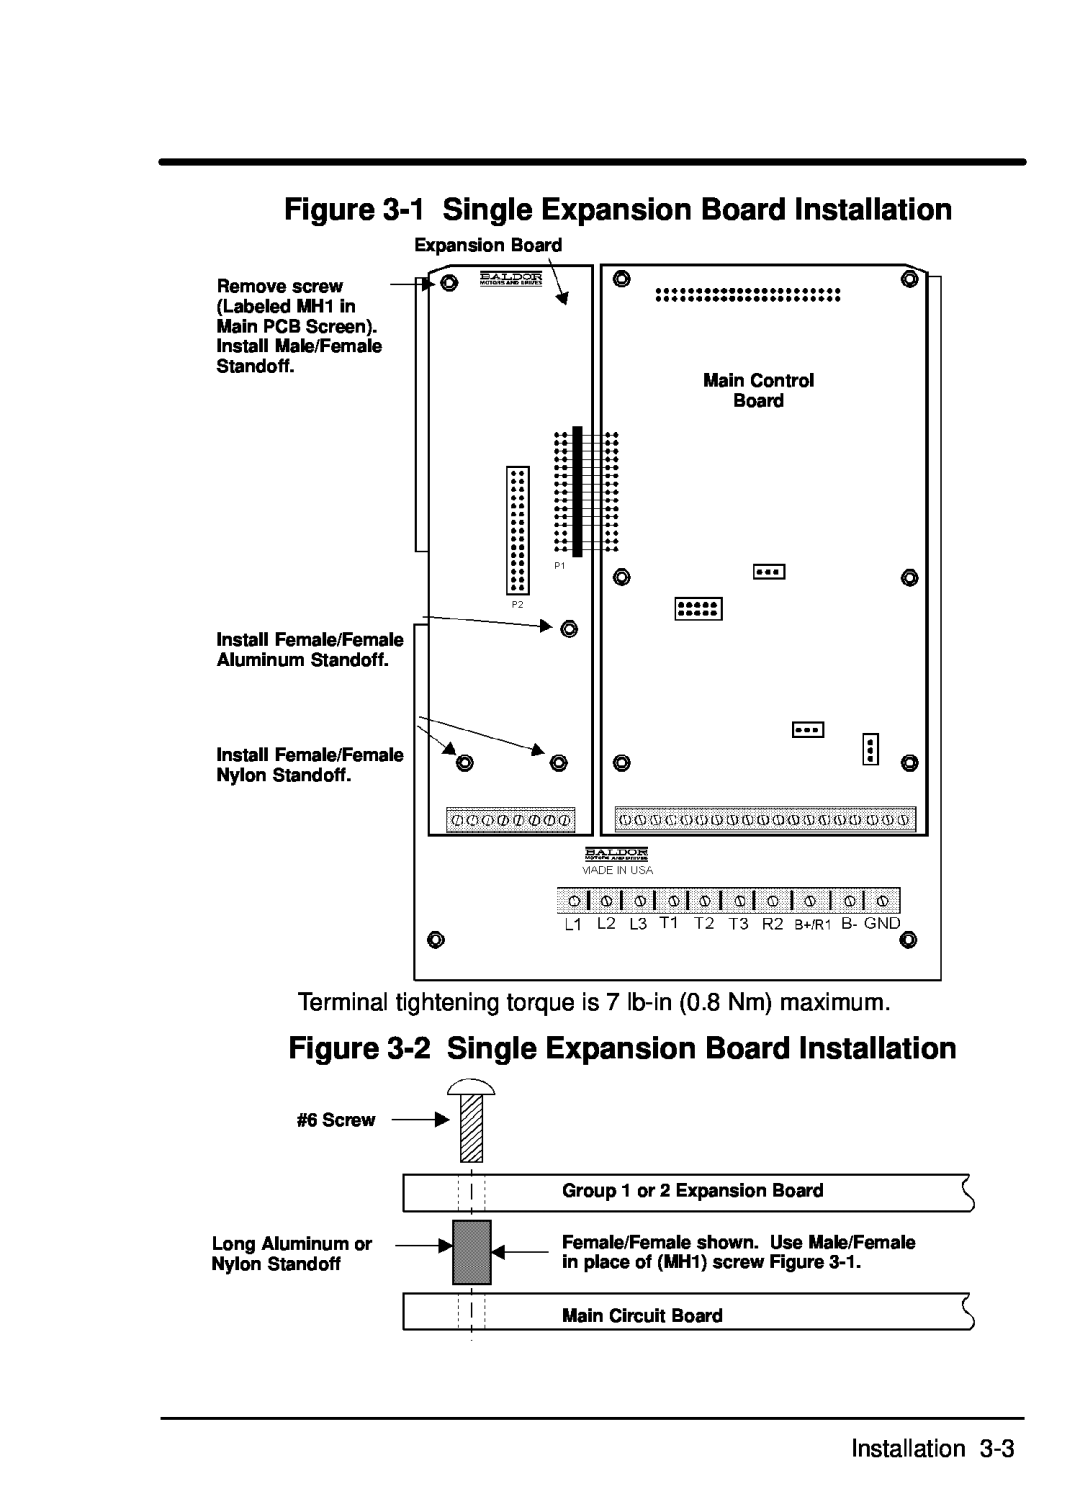 Baldor EXB009A01 manual 1 Single Expansion Board Installation, 2 Single Expansion Board Installation 